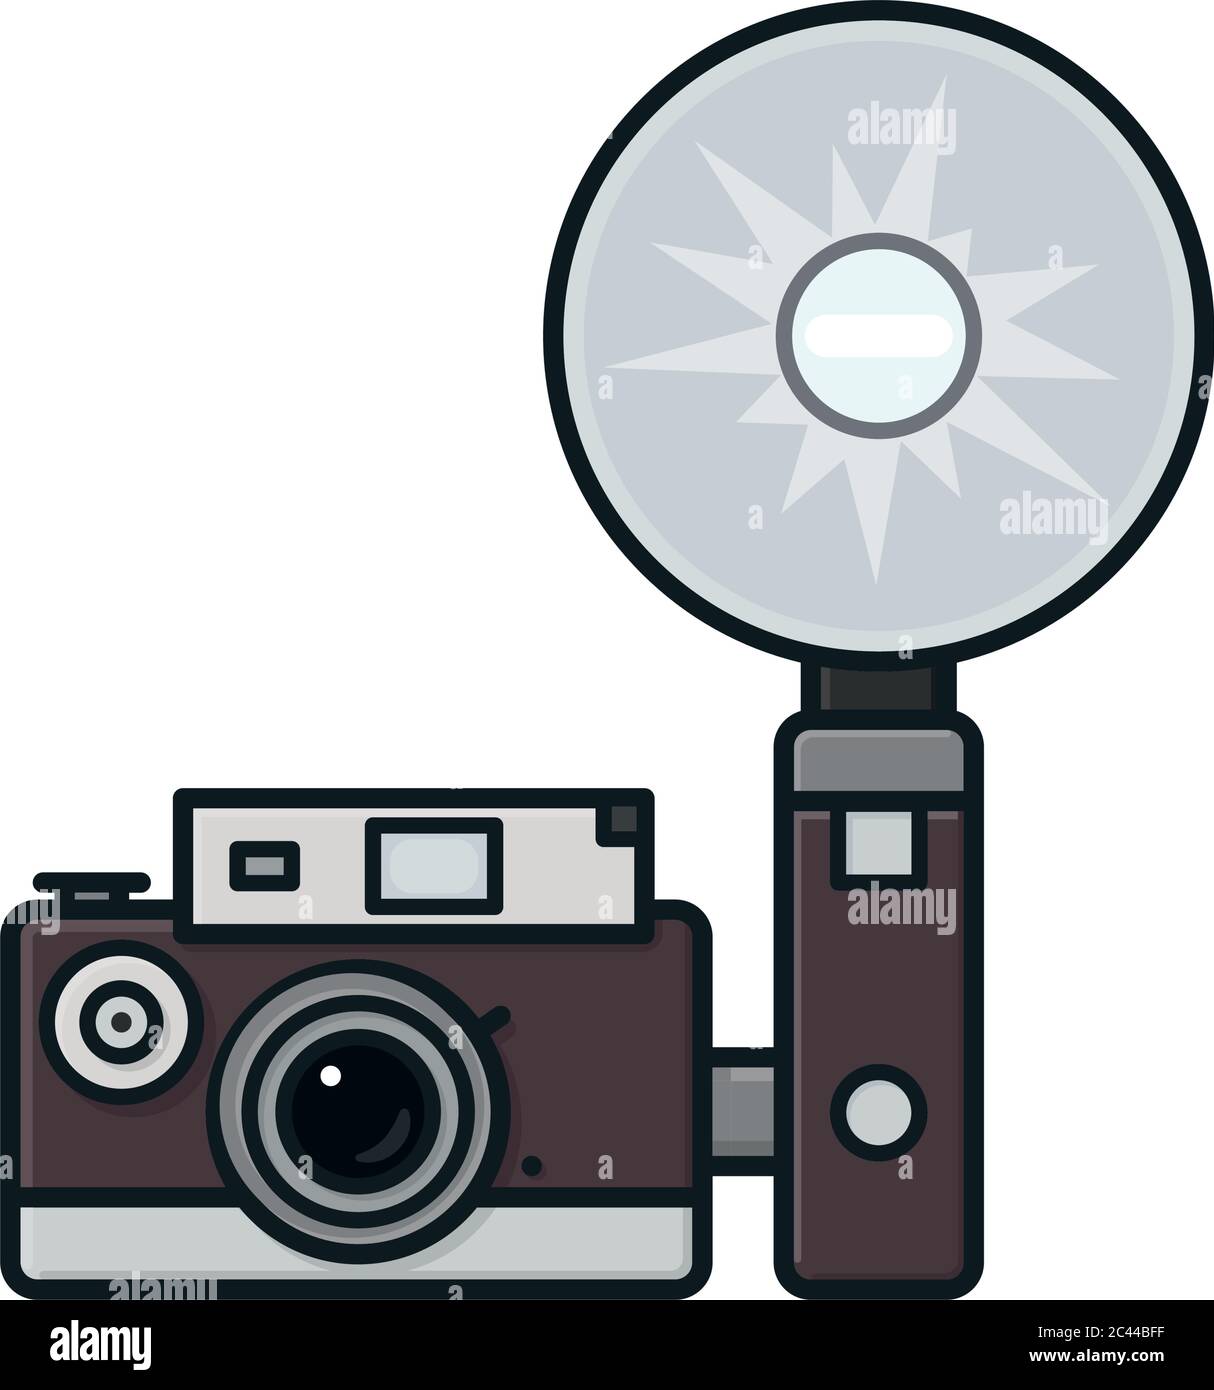 Fotocamera d'epoca con flash attached immagine vettoriale isolata per il giorno della fotocamera il 29 giugno. Supporti analogici e premere il simbolo. Illustrazione Vettoriale